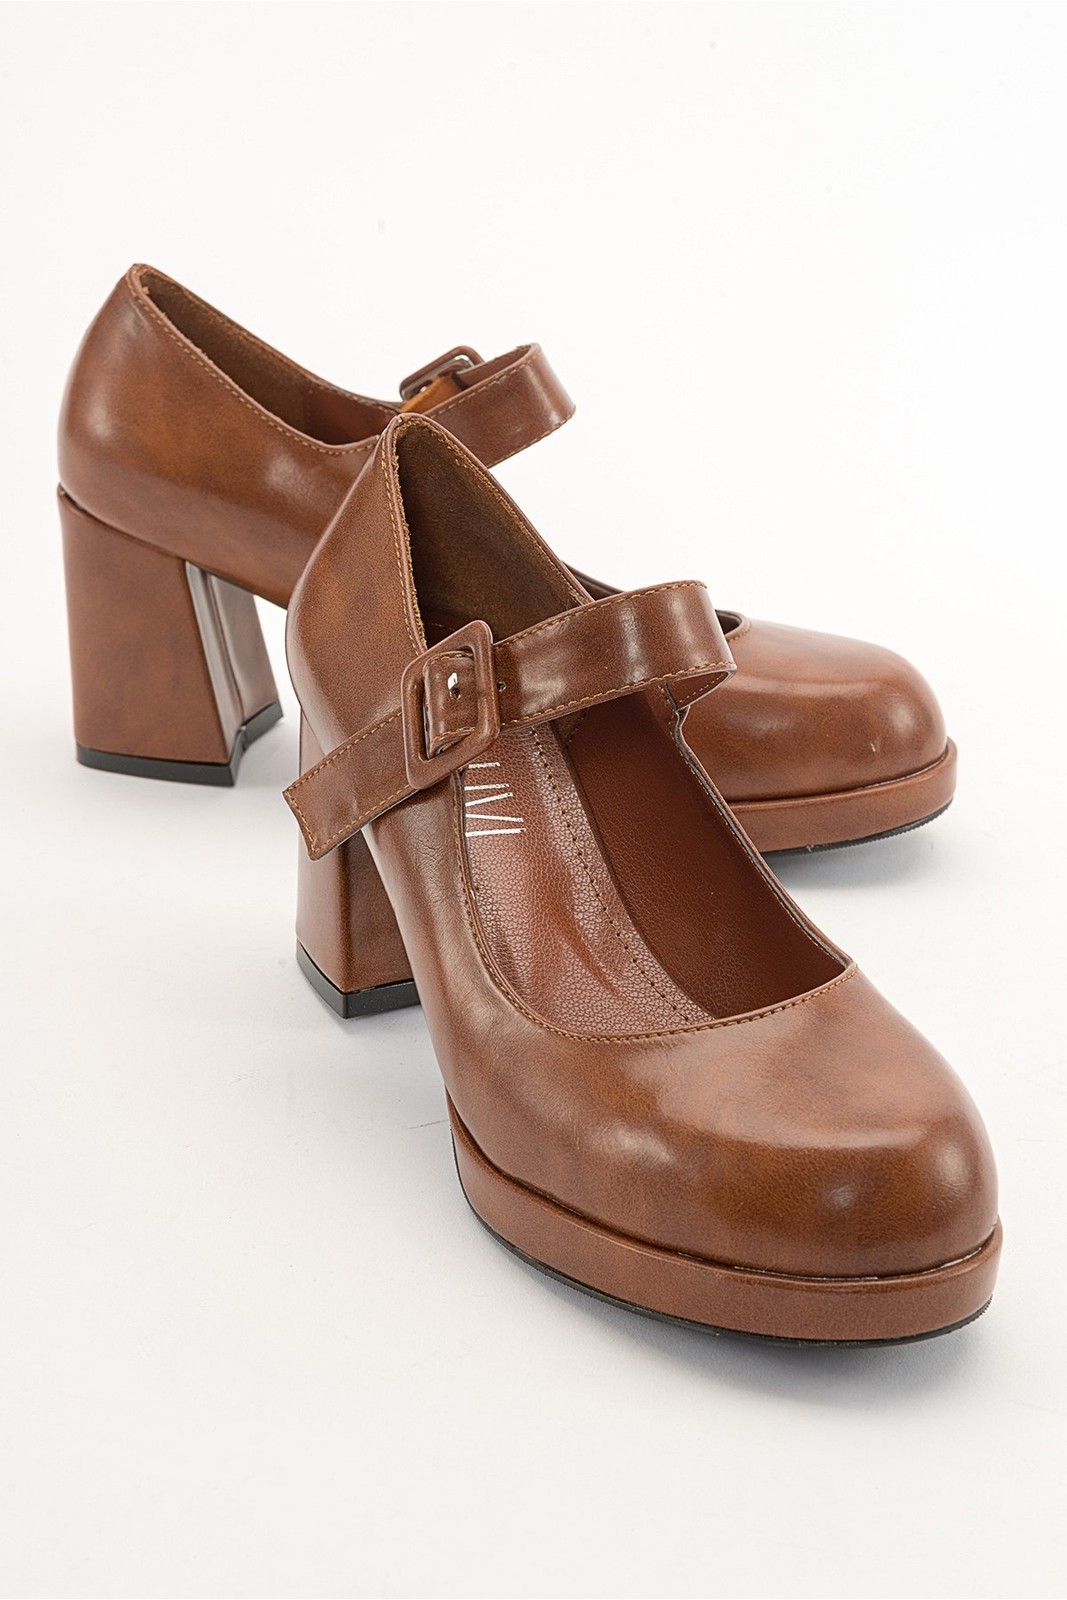 LuviShoes LELİH Tan Skin Women's Heeled Shoes